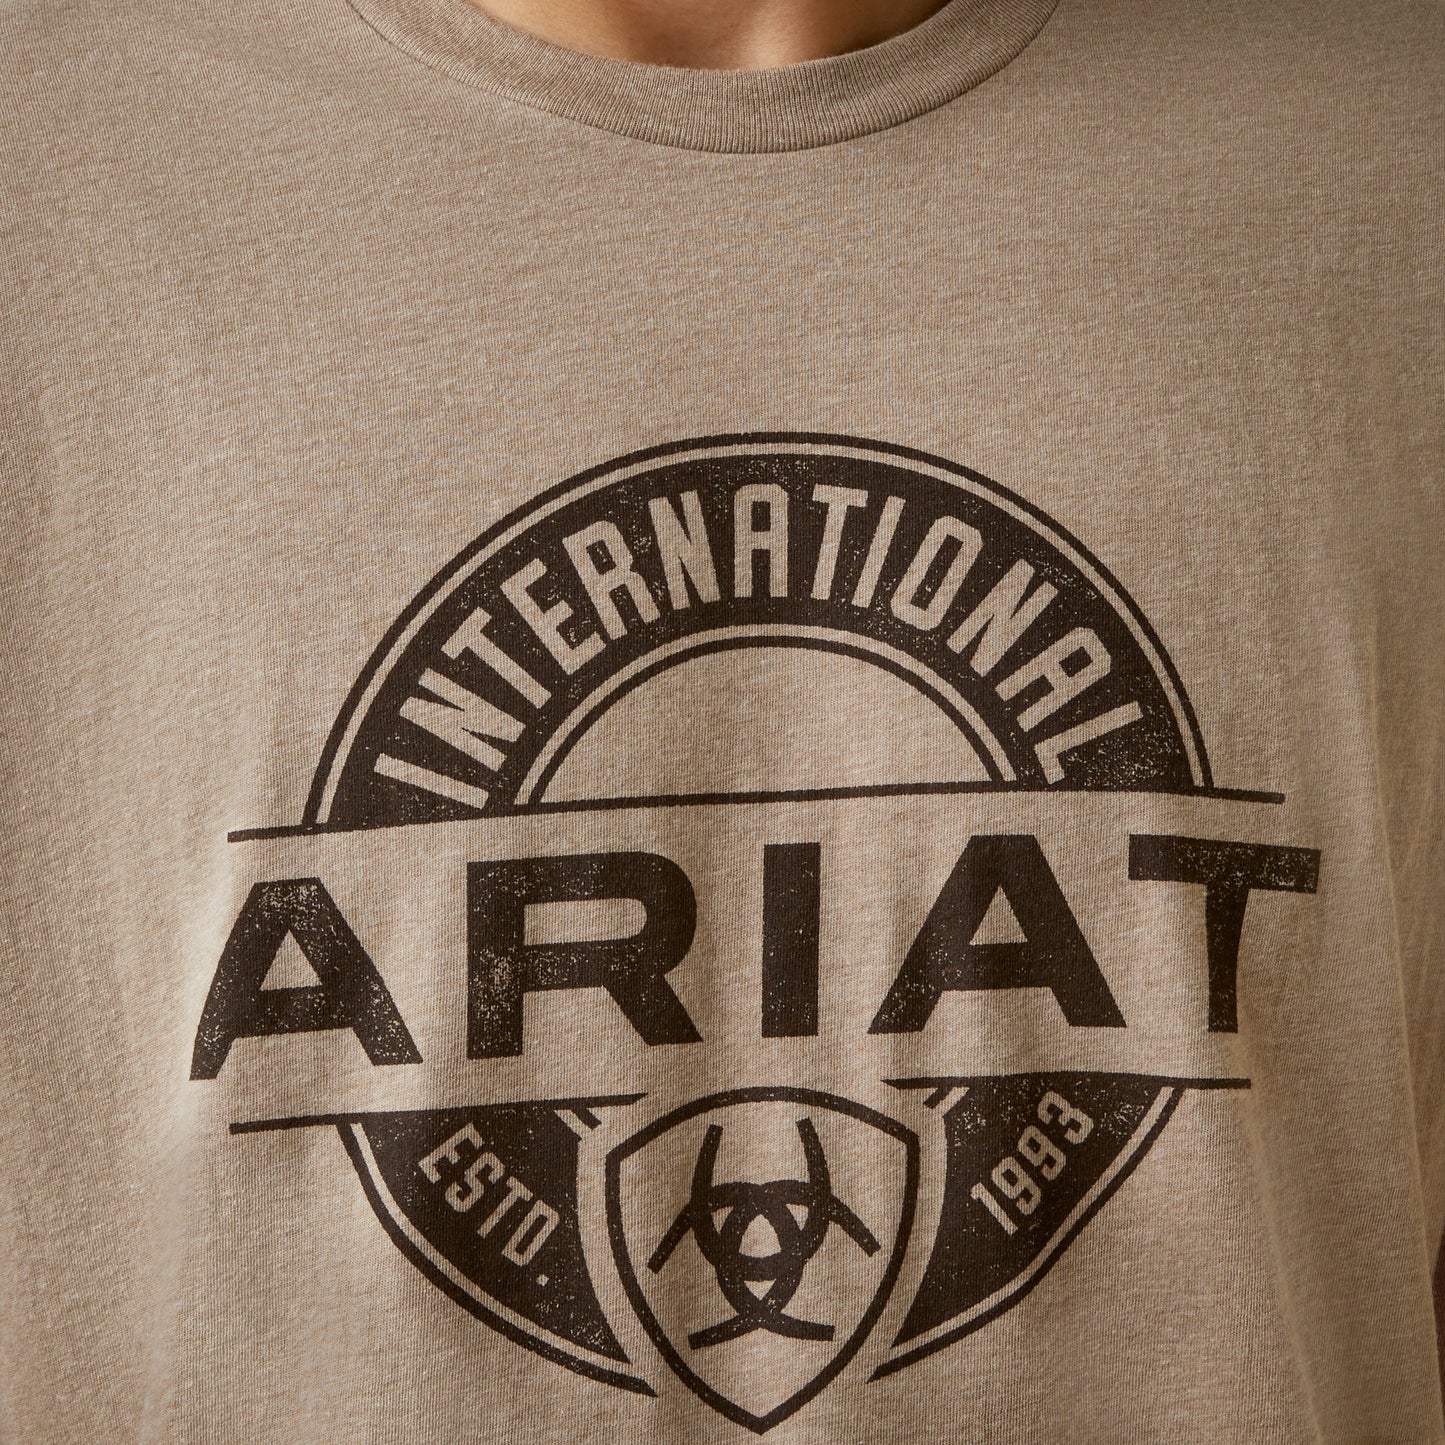 Ariat® Men's Oatmeal Heather Center Fire Graphic T-Shirt 10045285